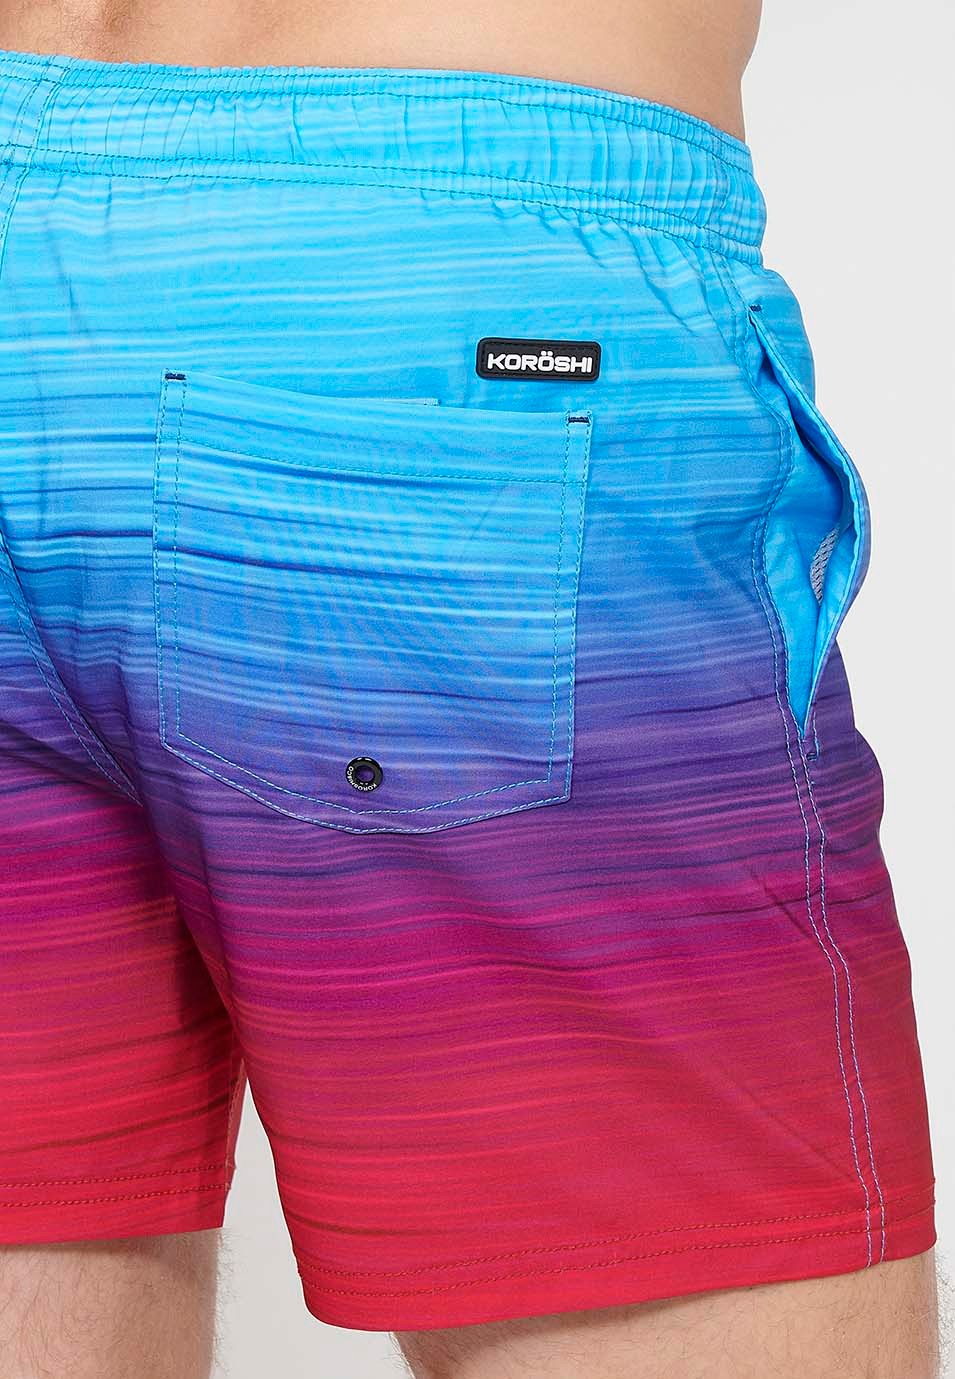 Bedruckter kurzer Badeanzug mit verstellbarer Taille mit Kordelzug und Gesäßtasche sowie einer Innentasche in Mehrfarbig für Herren 2